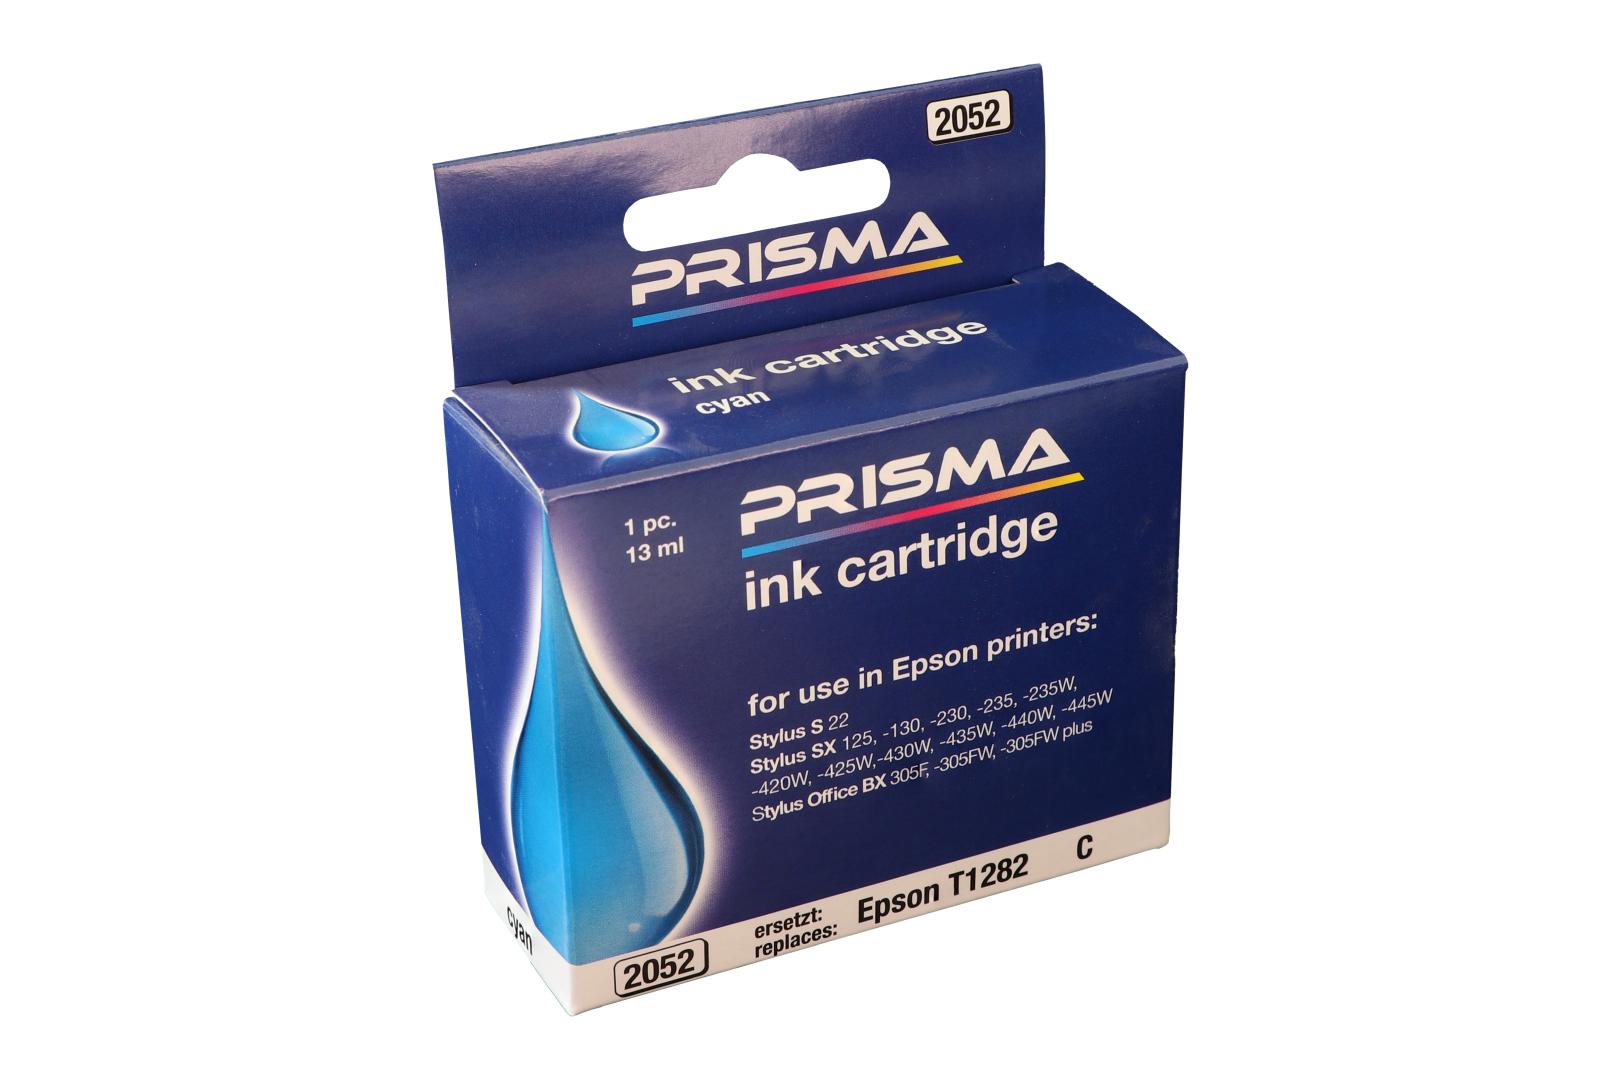 PRISMA 2052 Druckerpatrone für Epson Tintenstrahldrucker, cyan, 13 ml